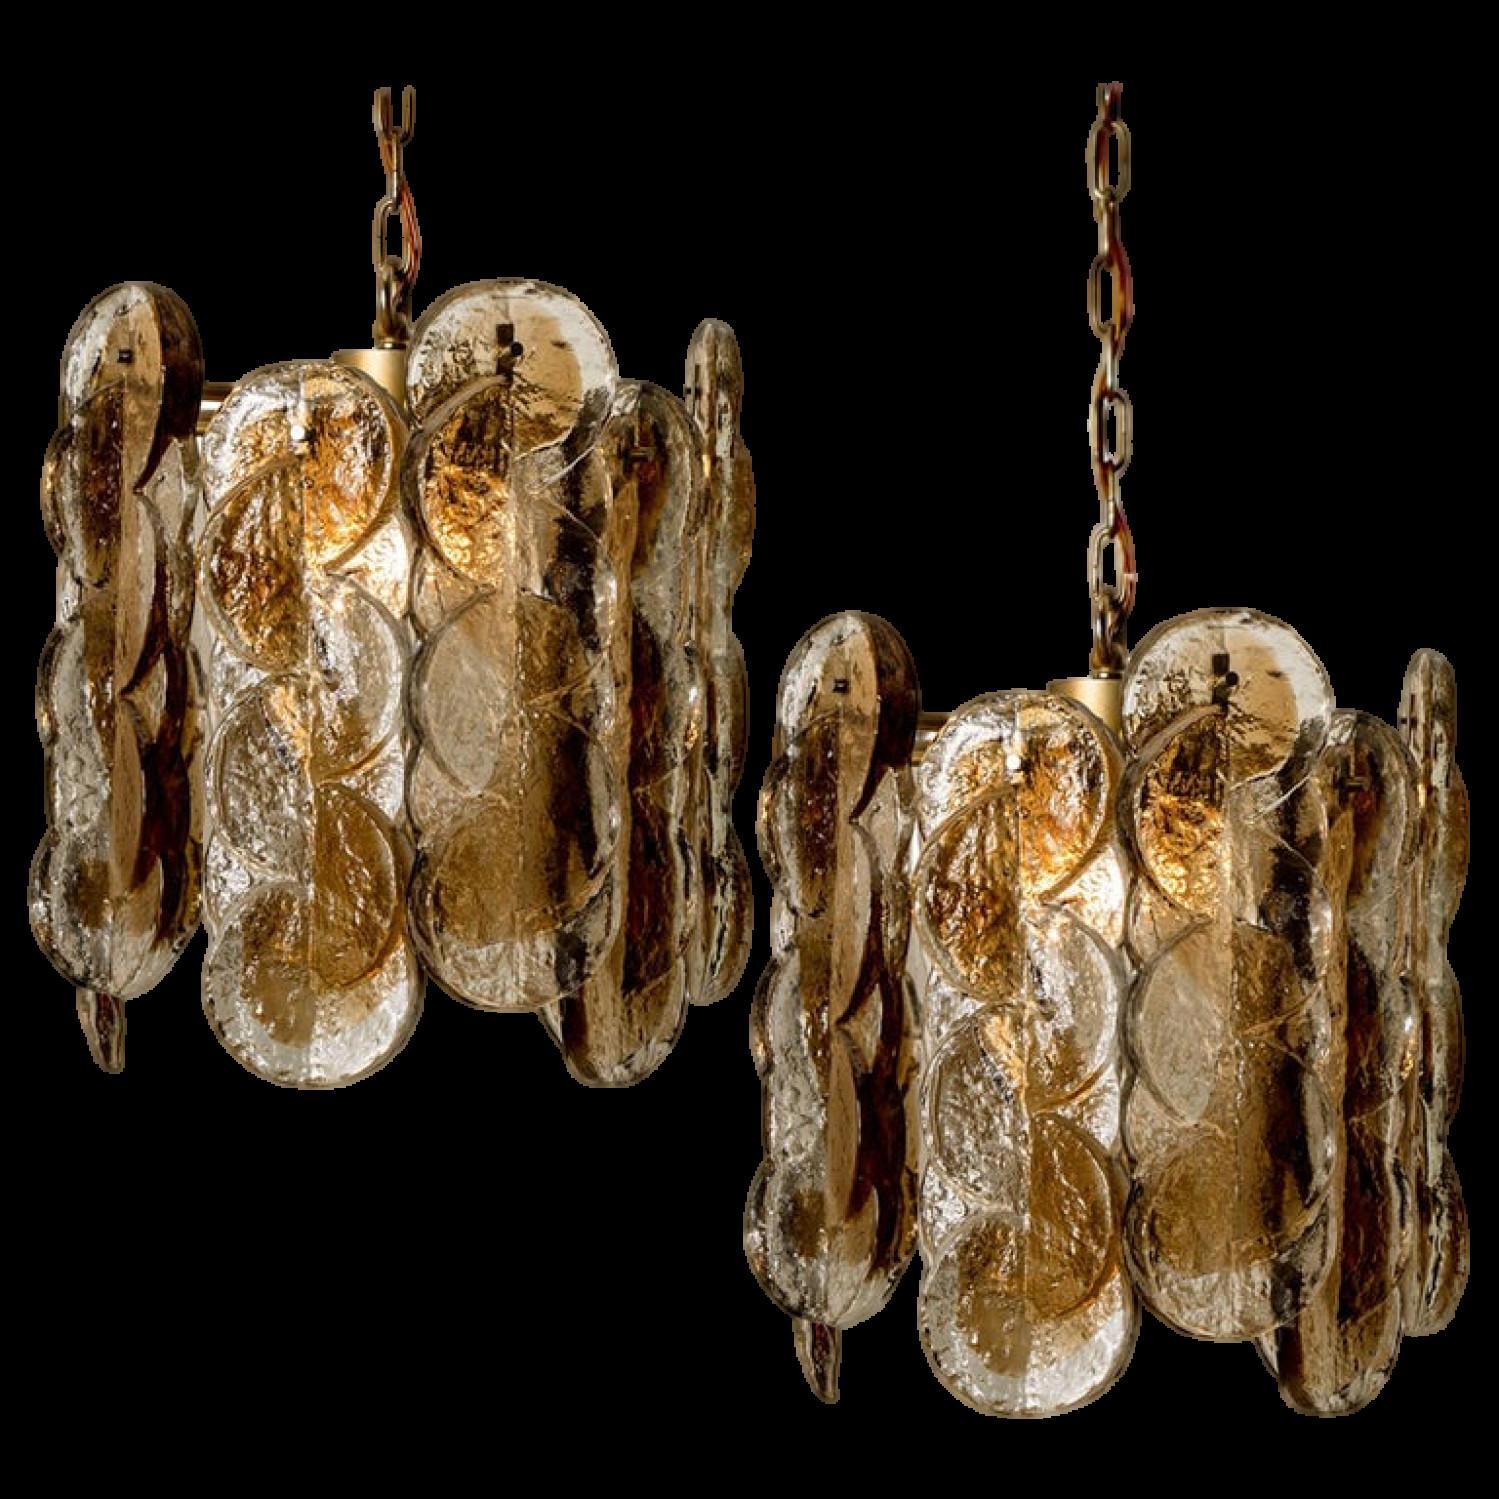 Ein Paar wunderschöne Murano-Glas-Hängeleuchten von Kalmar, 1960er Jahre. Hochwertiges, geräuchertes Swirl-Eisglas, 10 klare, gedrehte Kristallglasscheiben mit einem hellgoldenen, bernsteinfarbenen Streifen darin.

Schwere Qualität. Gereinigt und